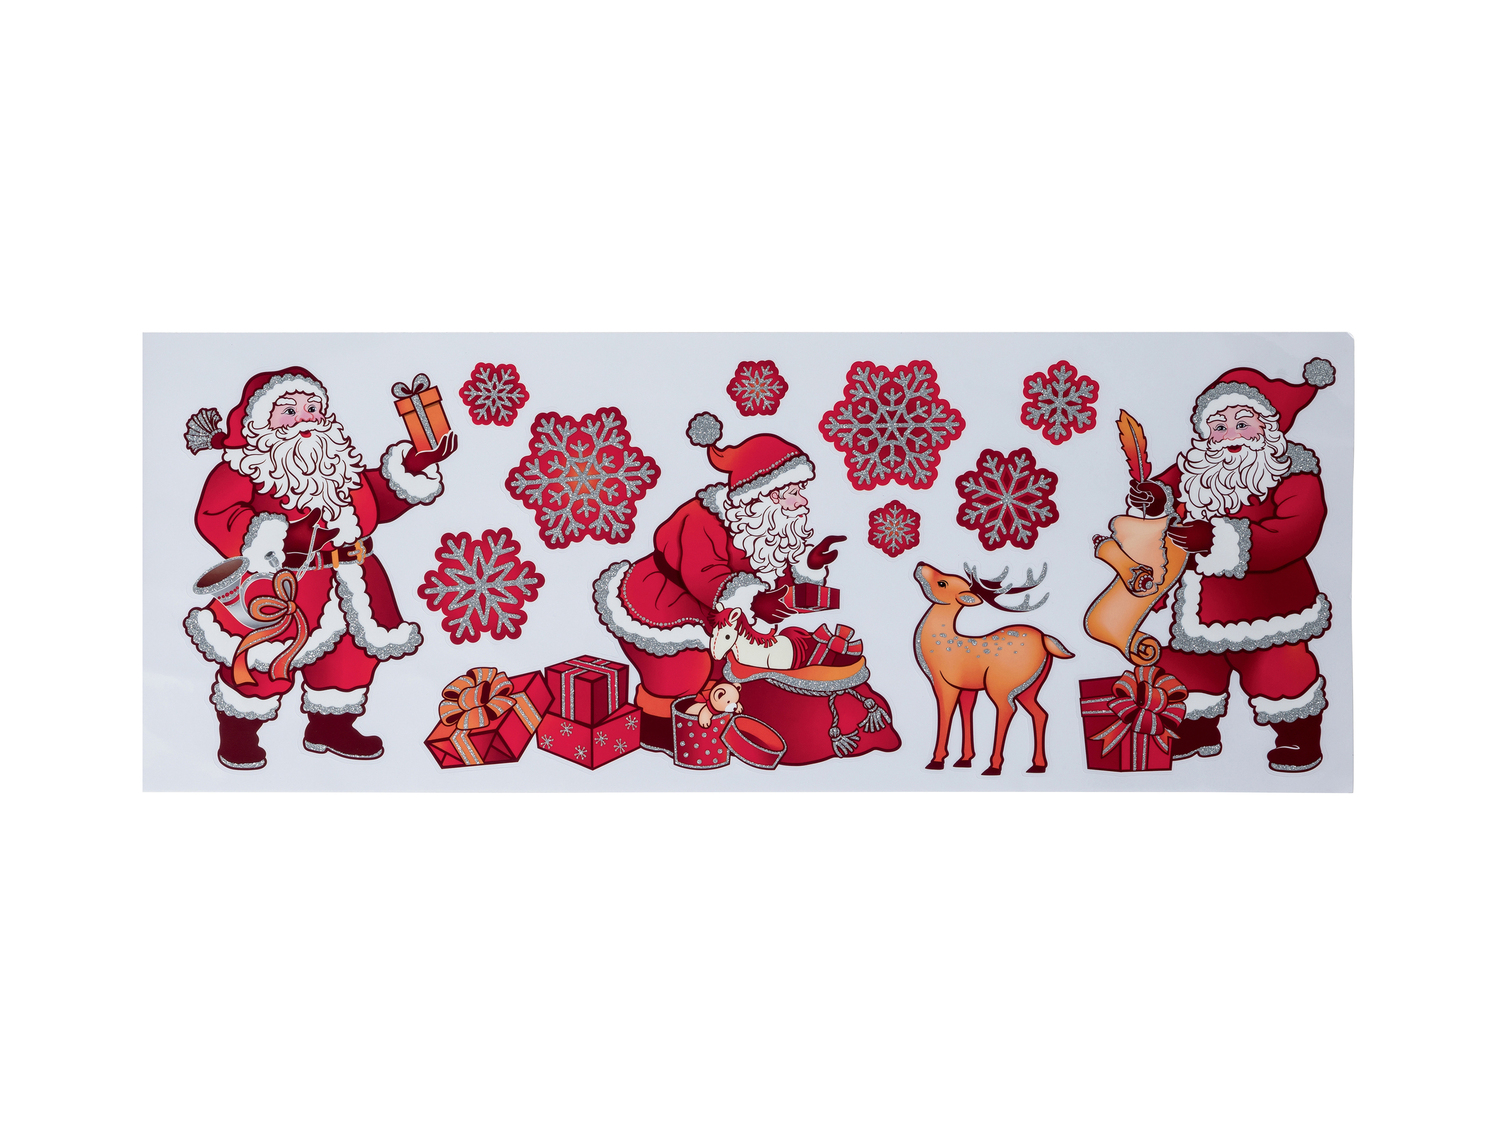 Decorazioni natalizie per finestre Melinera, prezzo 0.99 &#8364;  

Caratteristiche